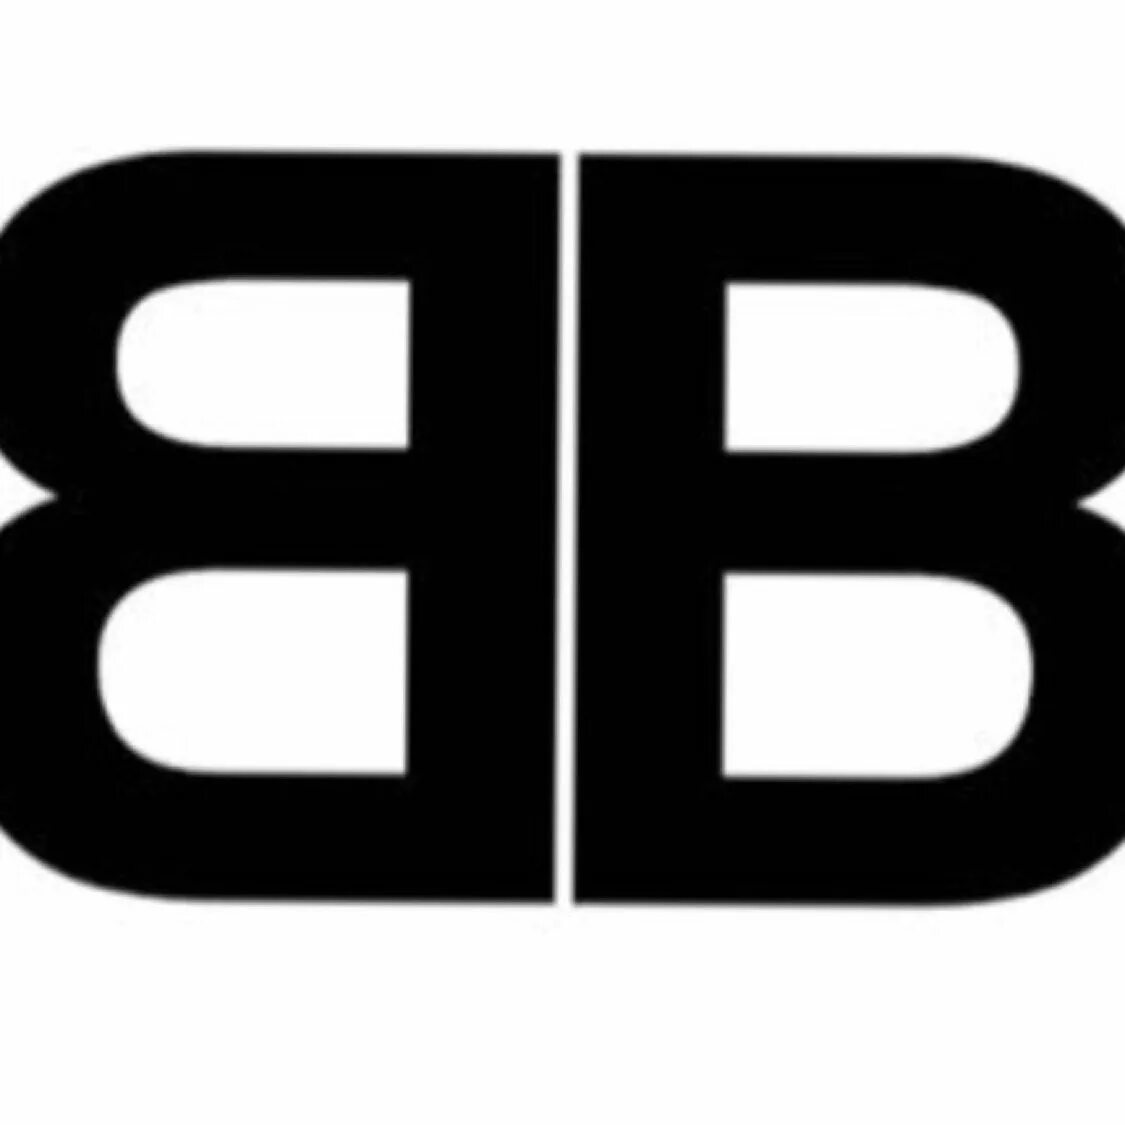 Марка одежды ВВ. Фирма BB. BB лого. Бренд с буквами BB. Бб б б бю б